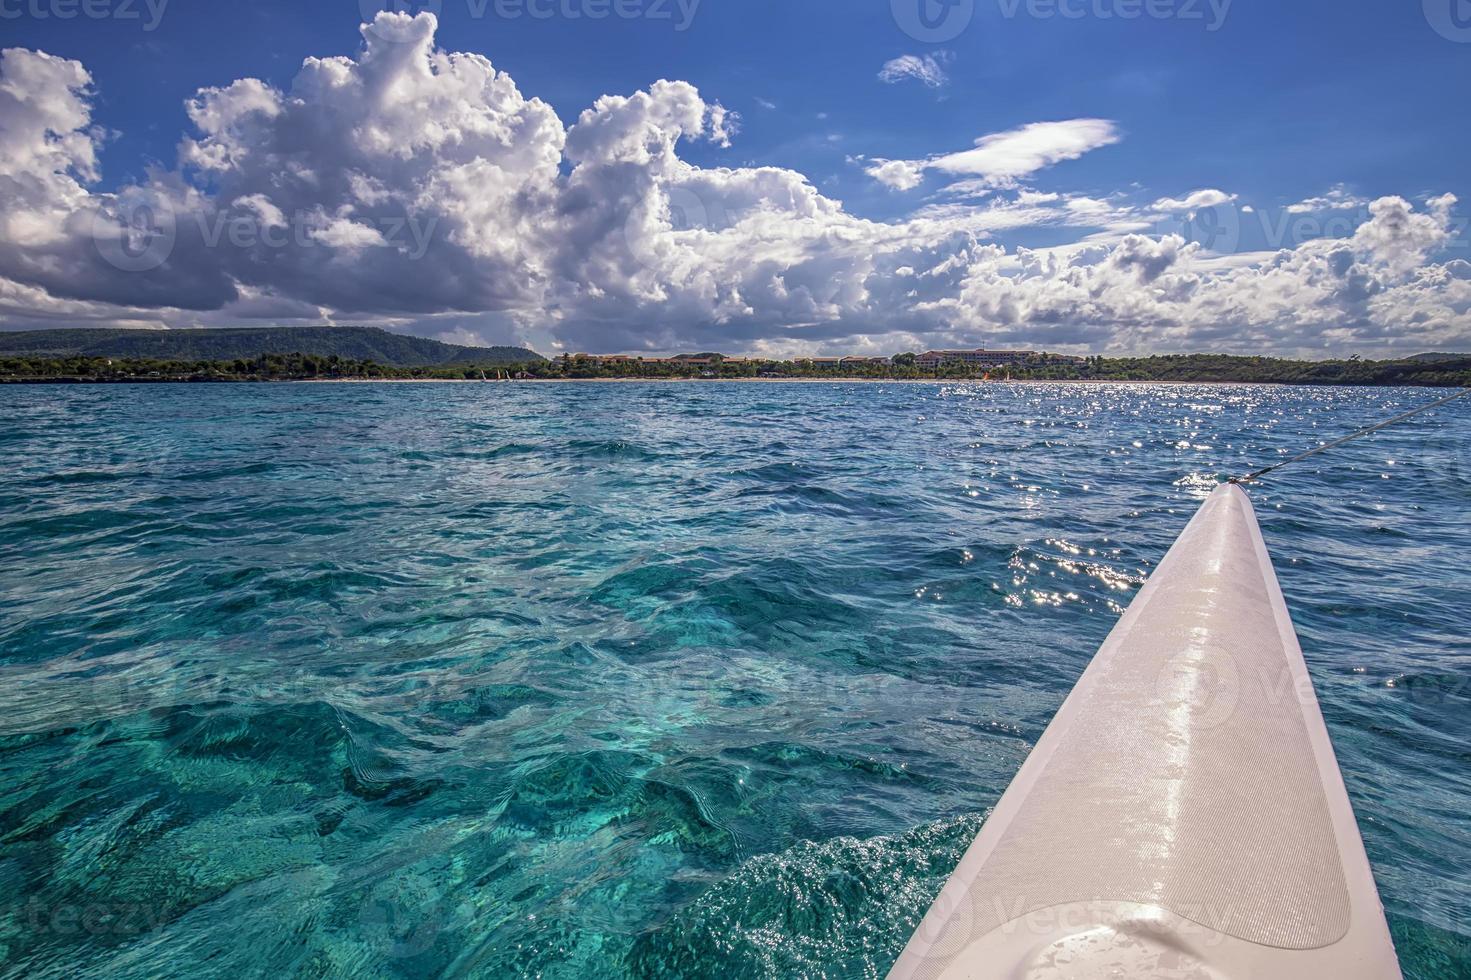 magnifique paysage de le catamaran à atlantique océan et littoral, turquoise l'eau et bleu ciel avec des nuages. Cuba photo